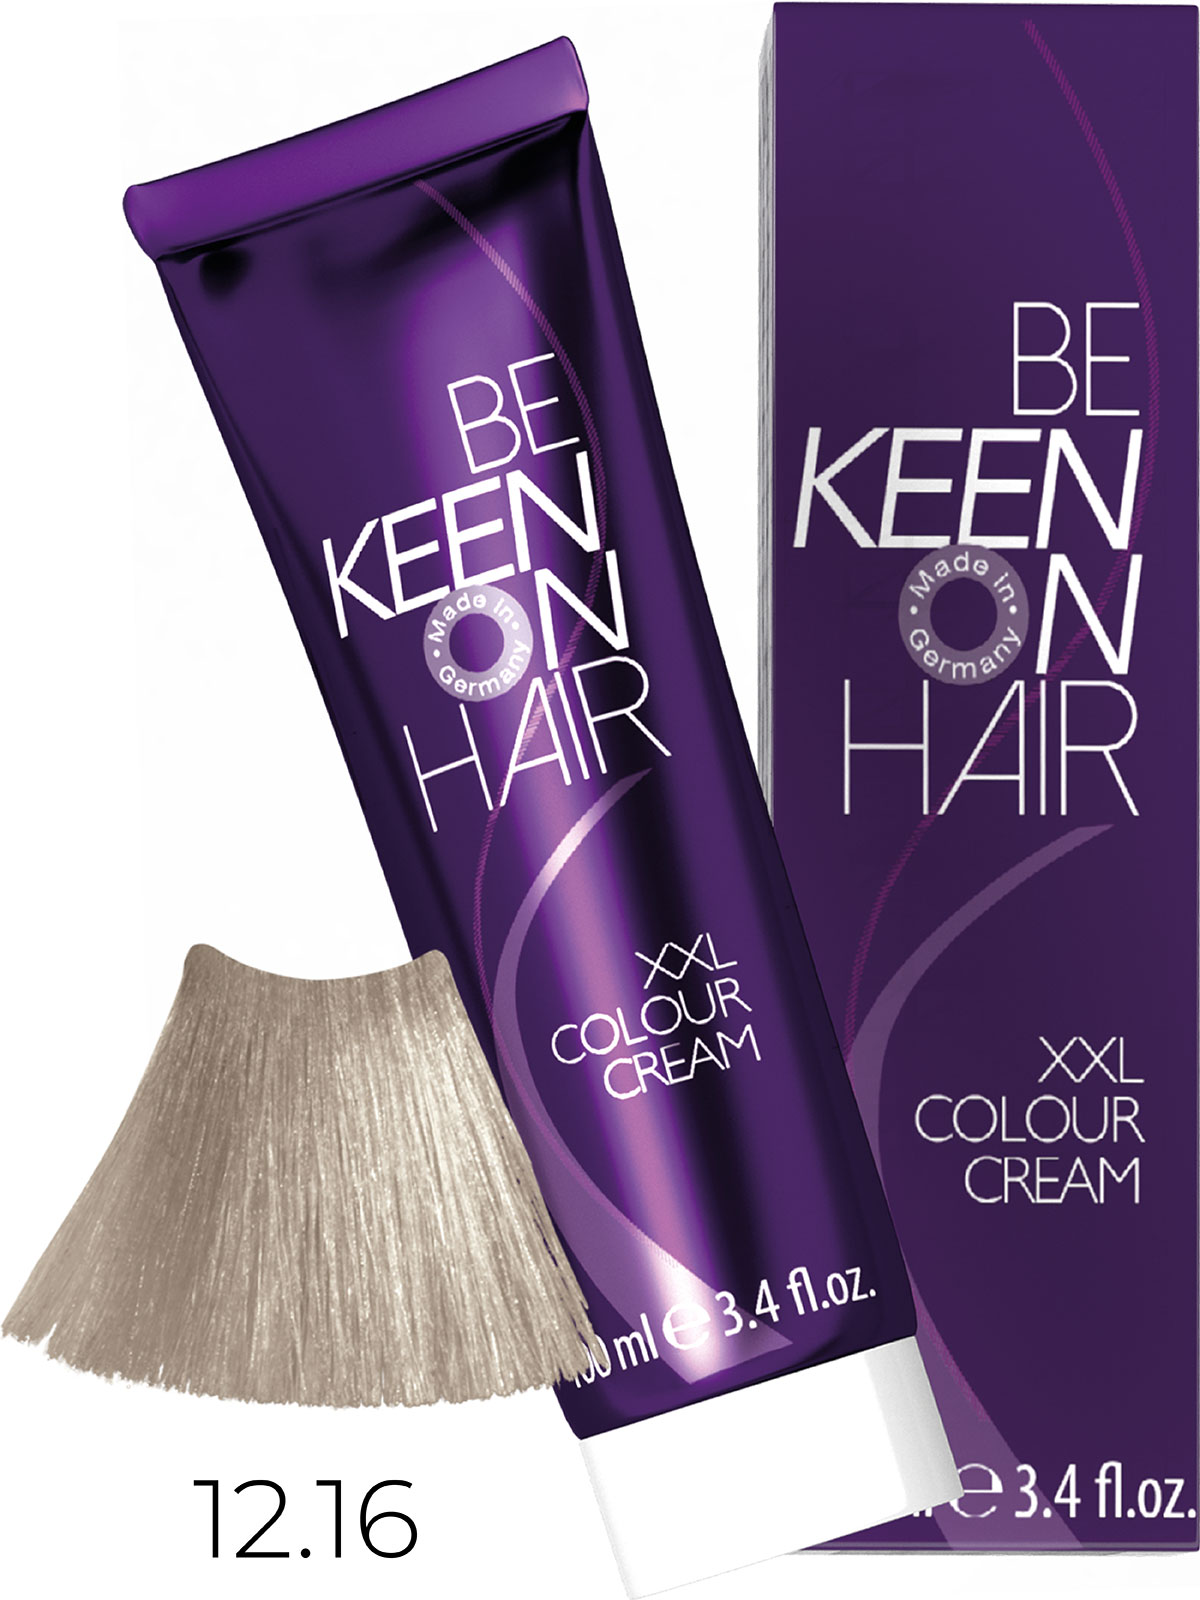 Keen крем краска colour cream xxl 12.16 платиновый пепельно фиолетовый блондин 100 мл БС